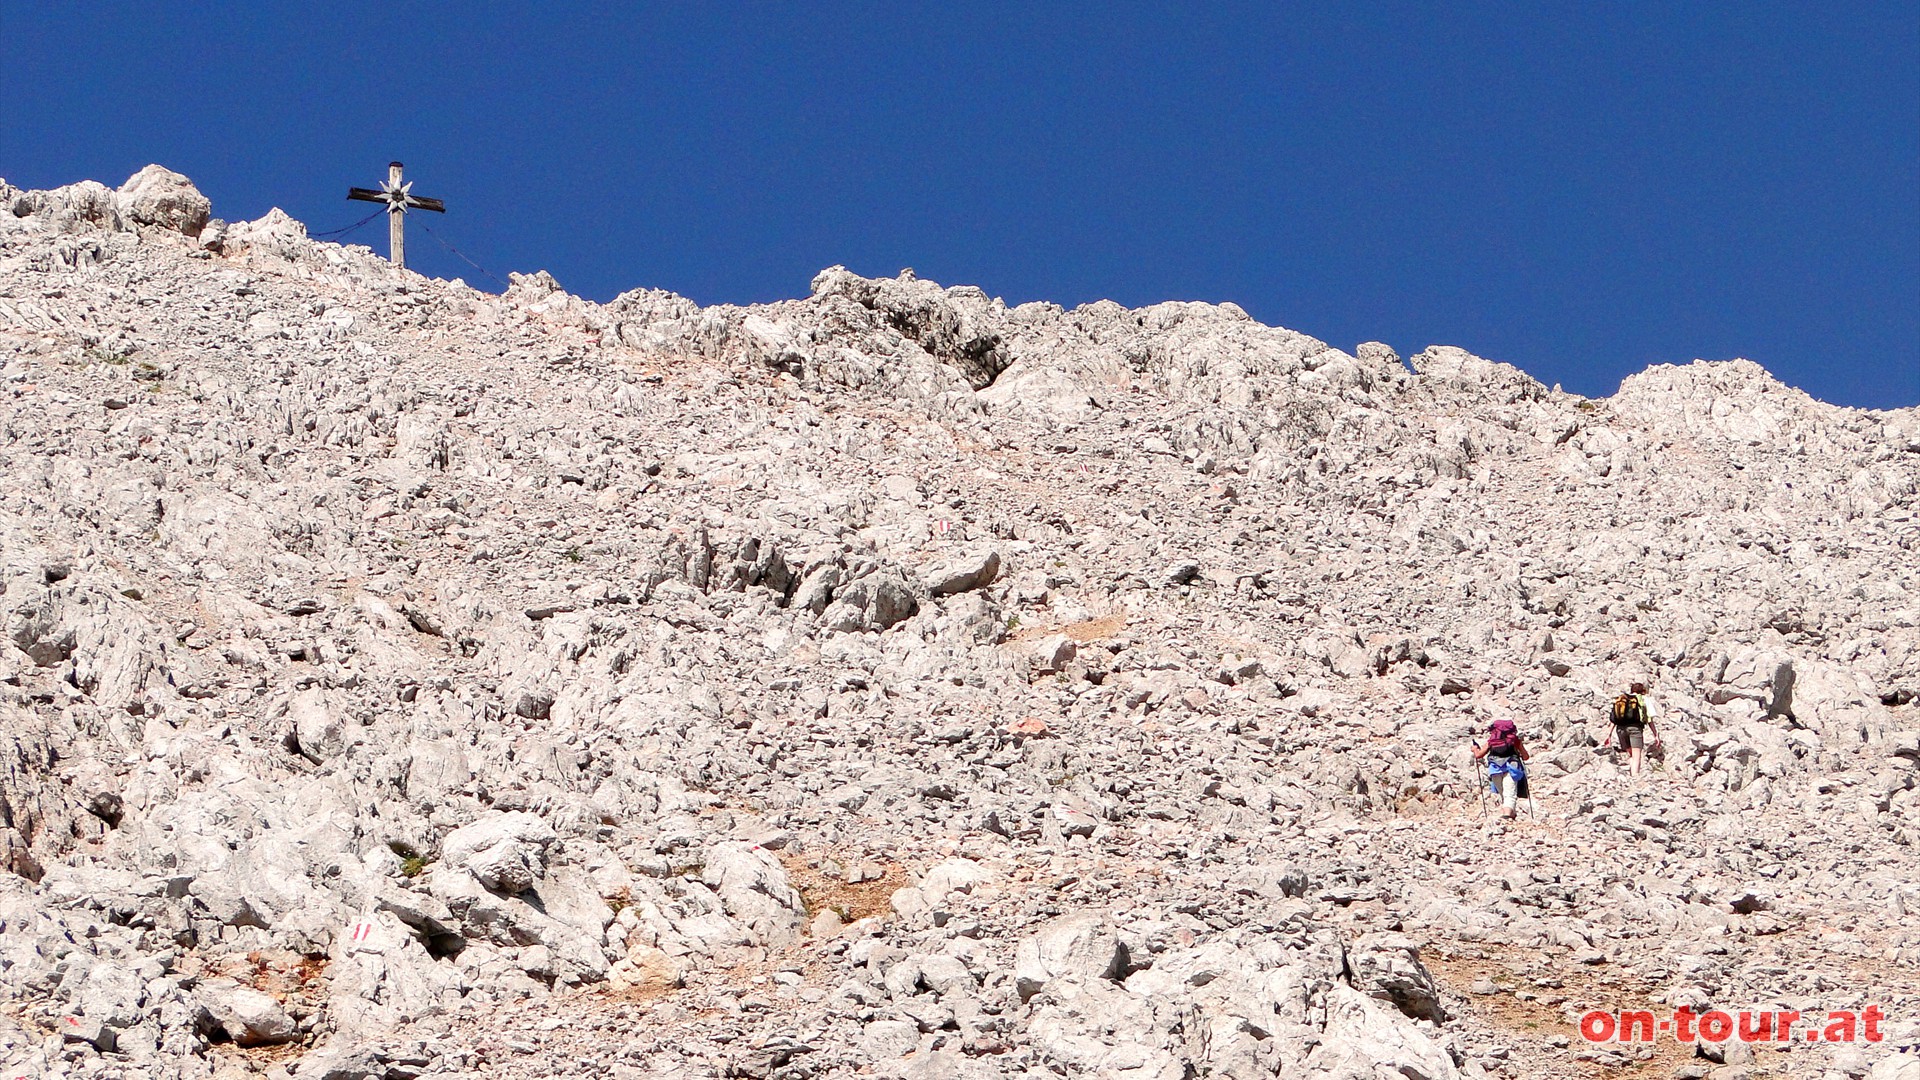 Kurze, leichte Kletterpassagen sind zu überwinden - Trittsicherheit und Schwindelfreiheit!